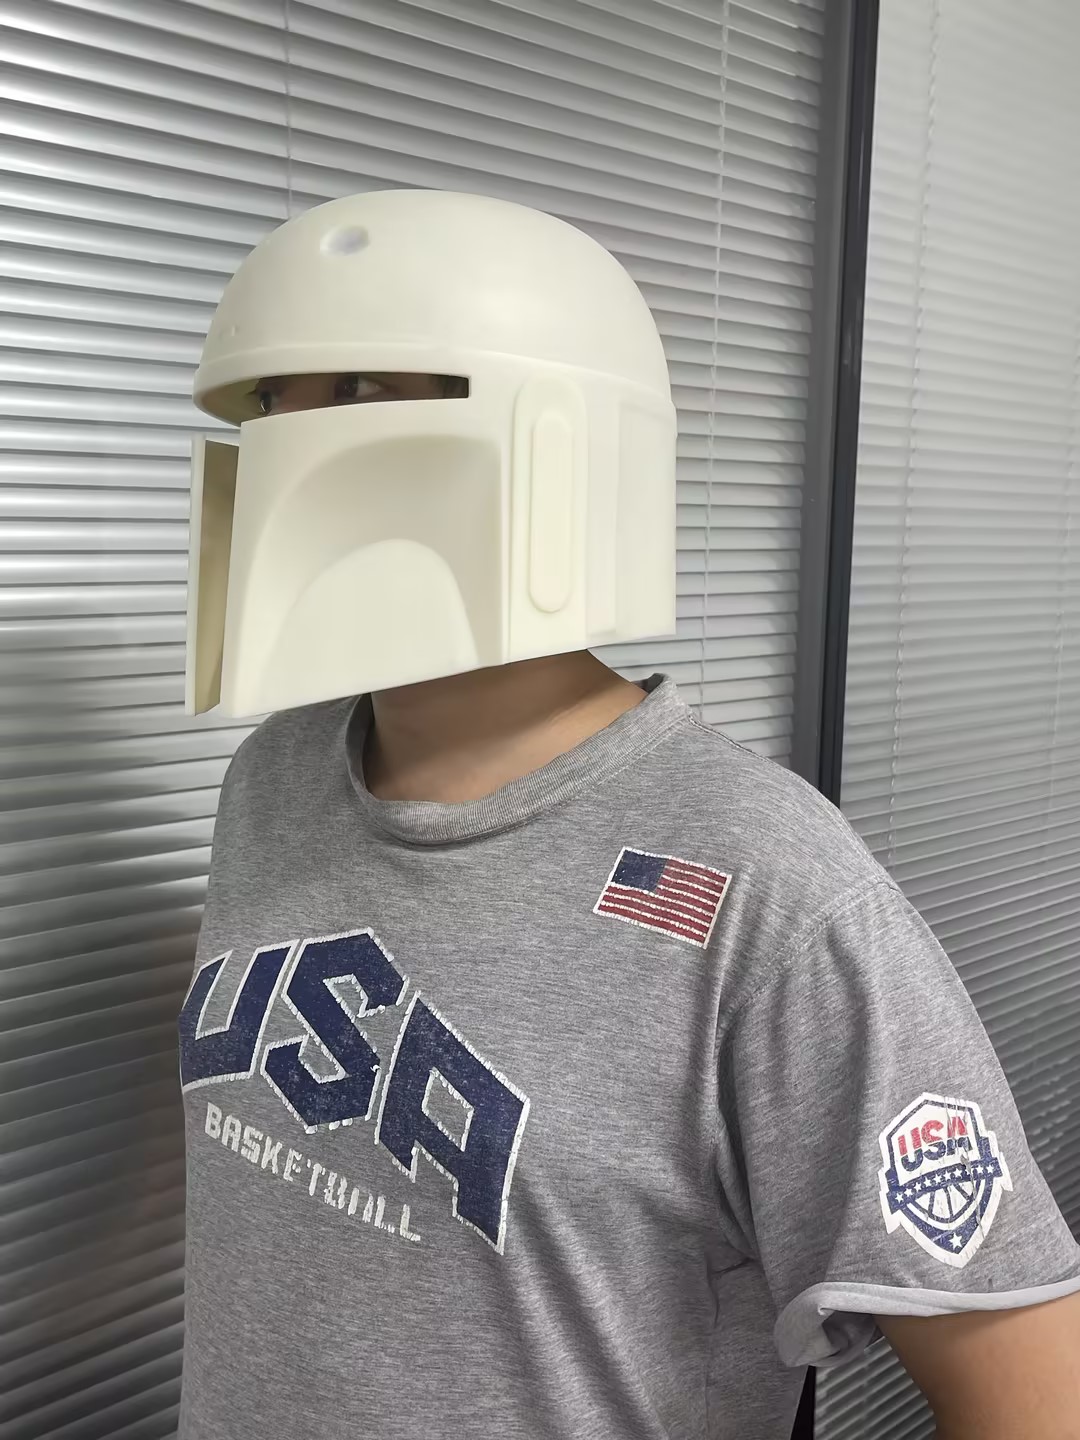 3D-printed Star Wars Helmet at 3DSPRO